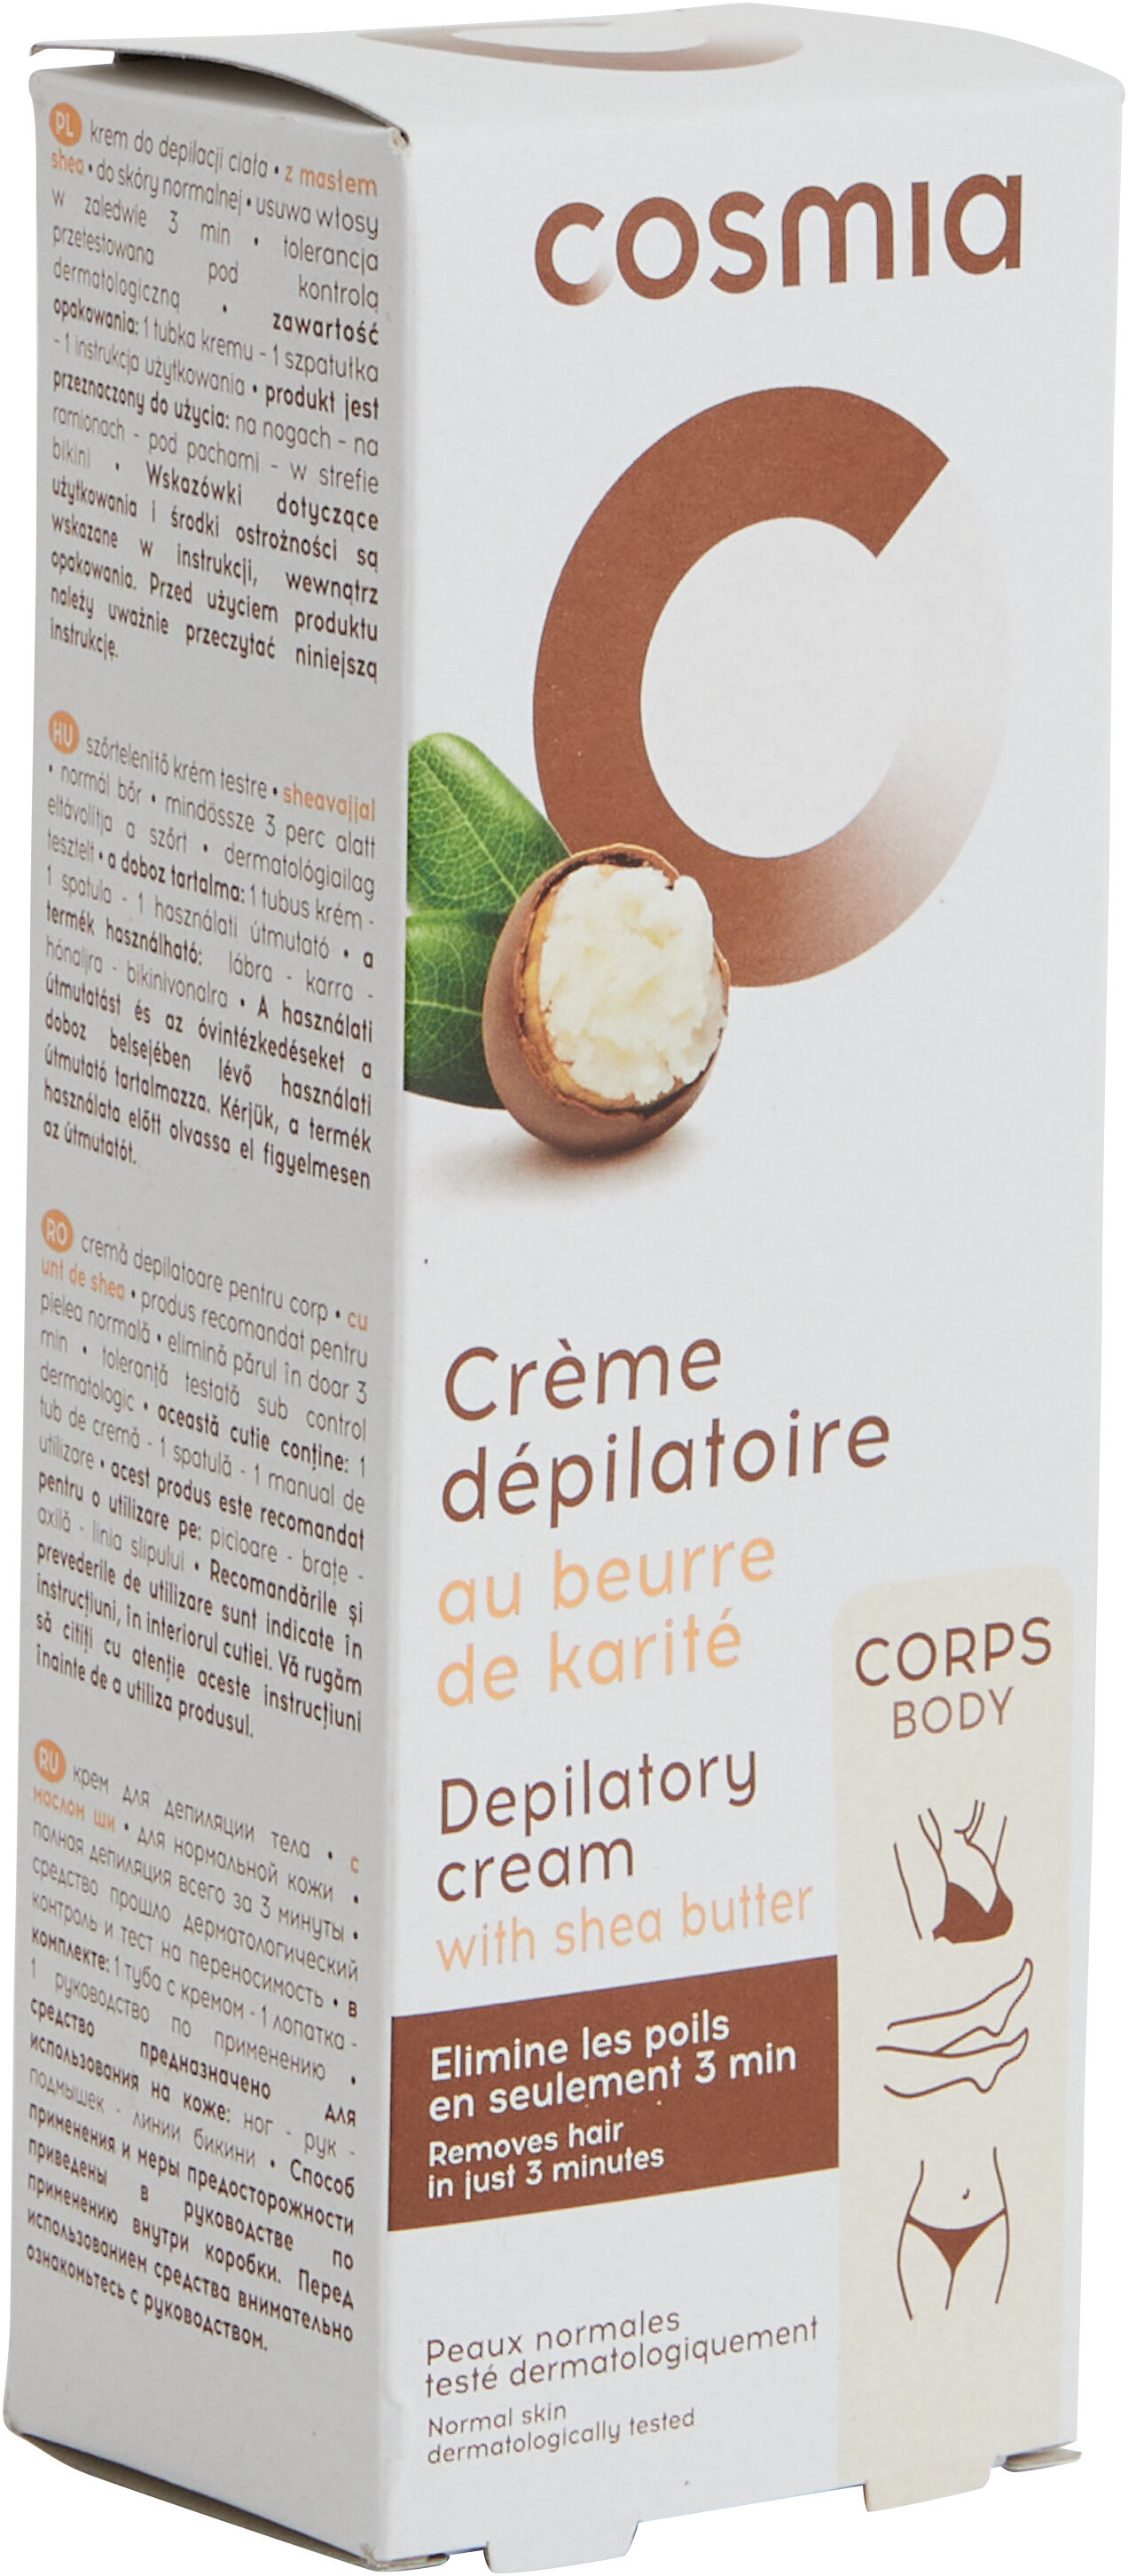 Crème dépilatoire au beurre de karité - Produkt - fr